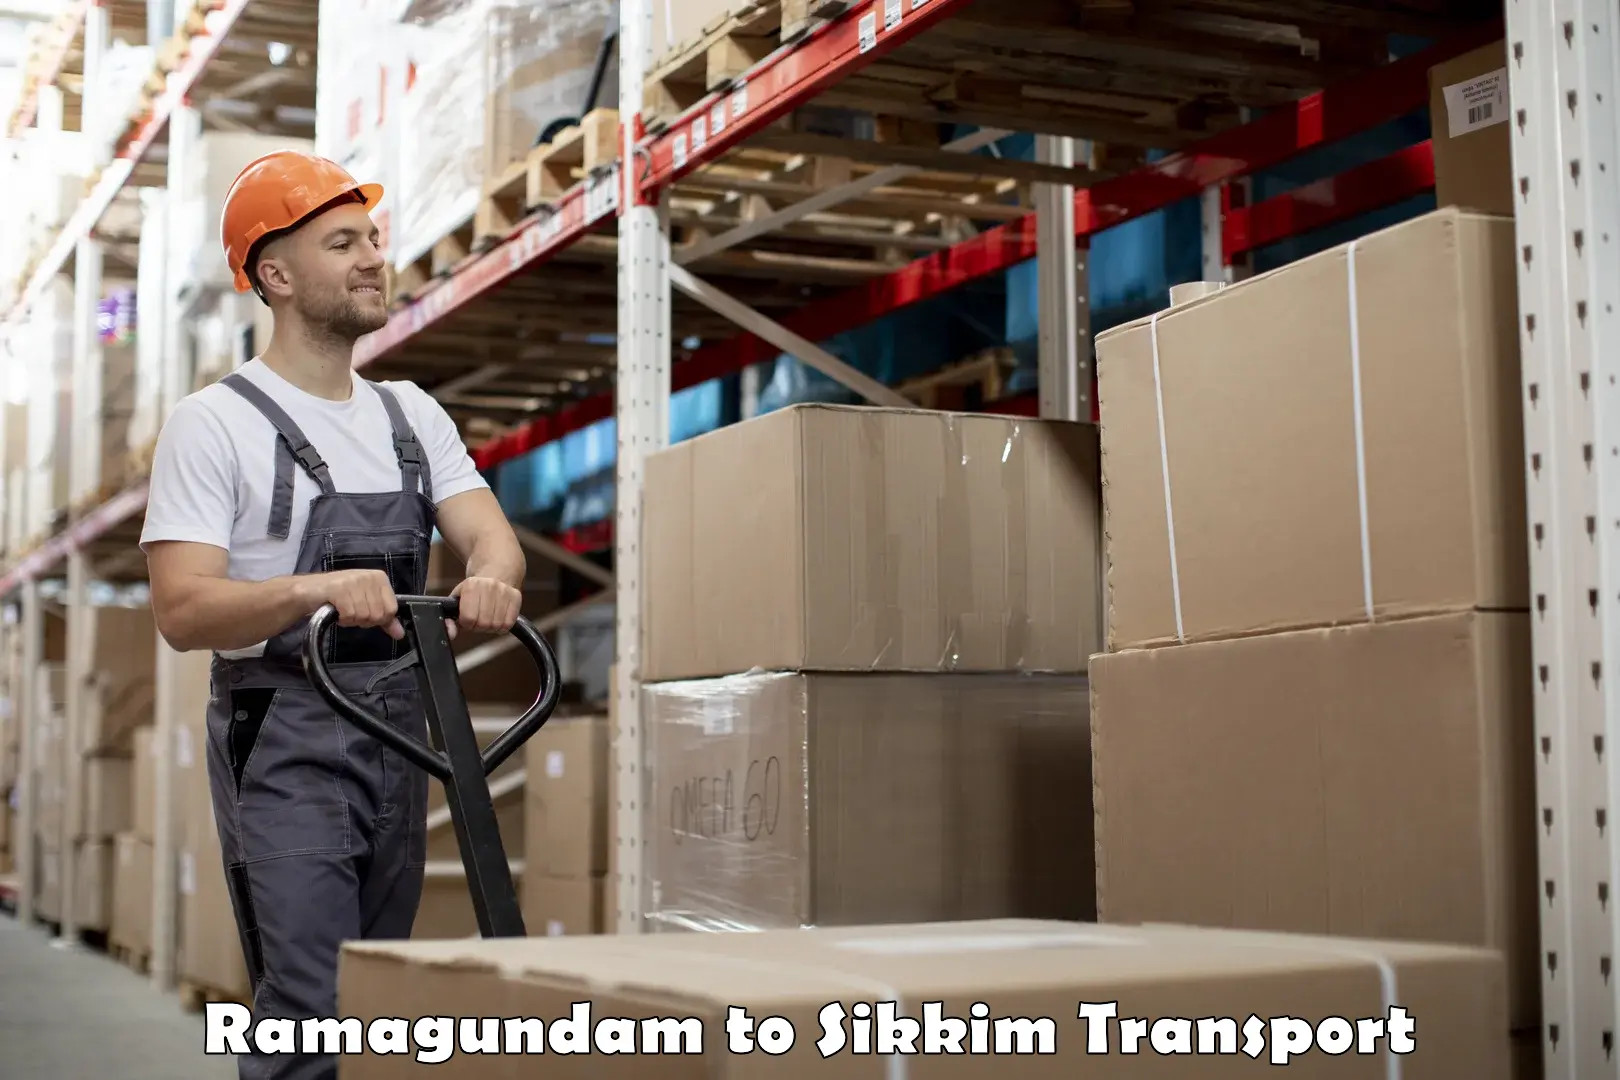 International cargo transportation services Ramagundam to Namchi